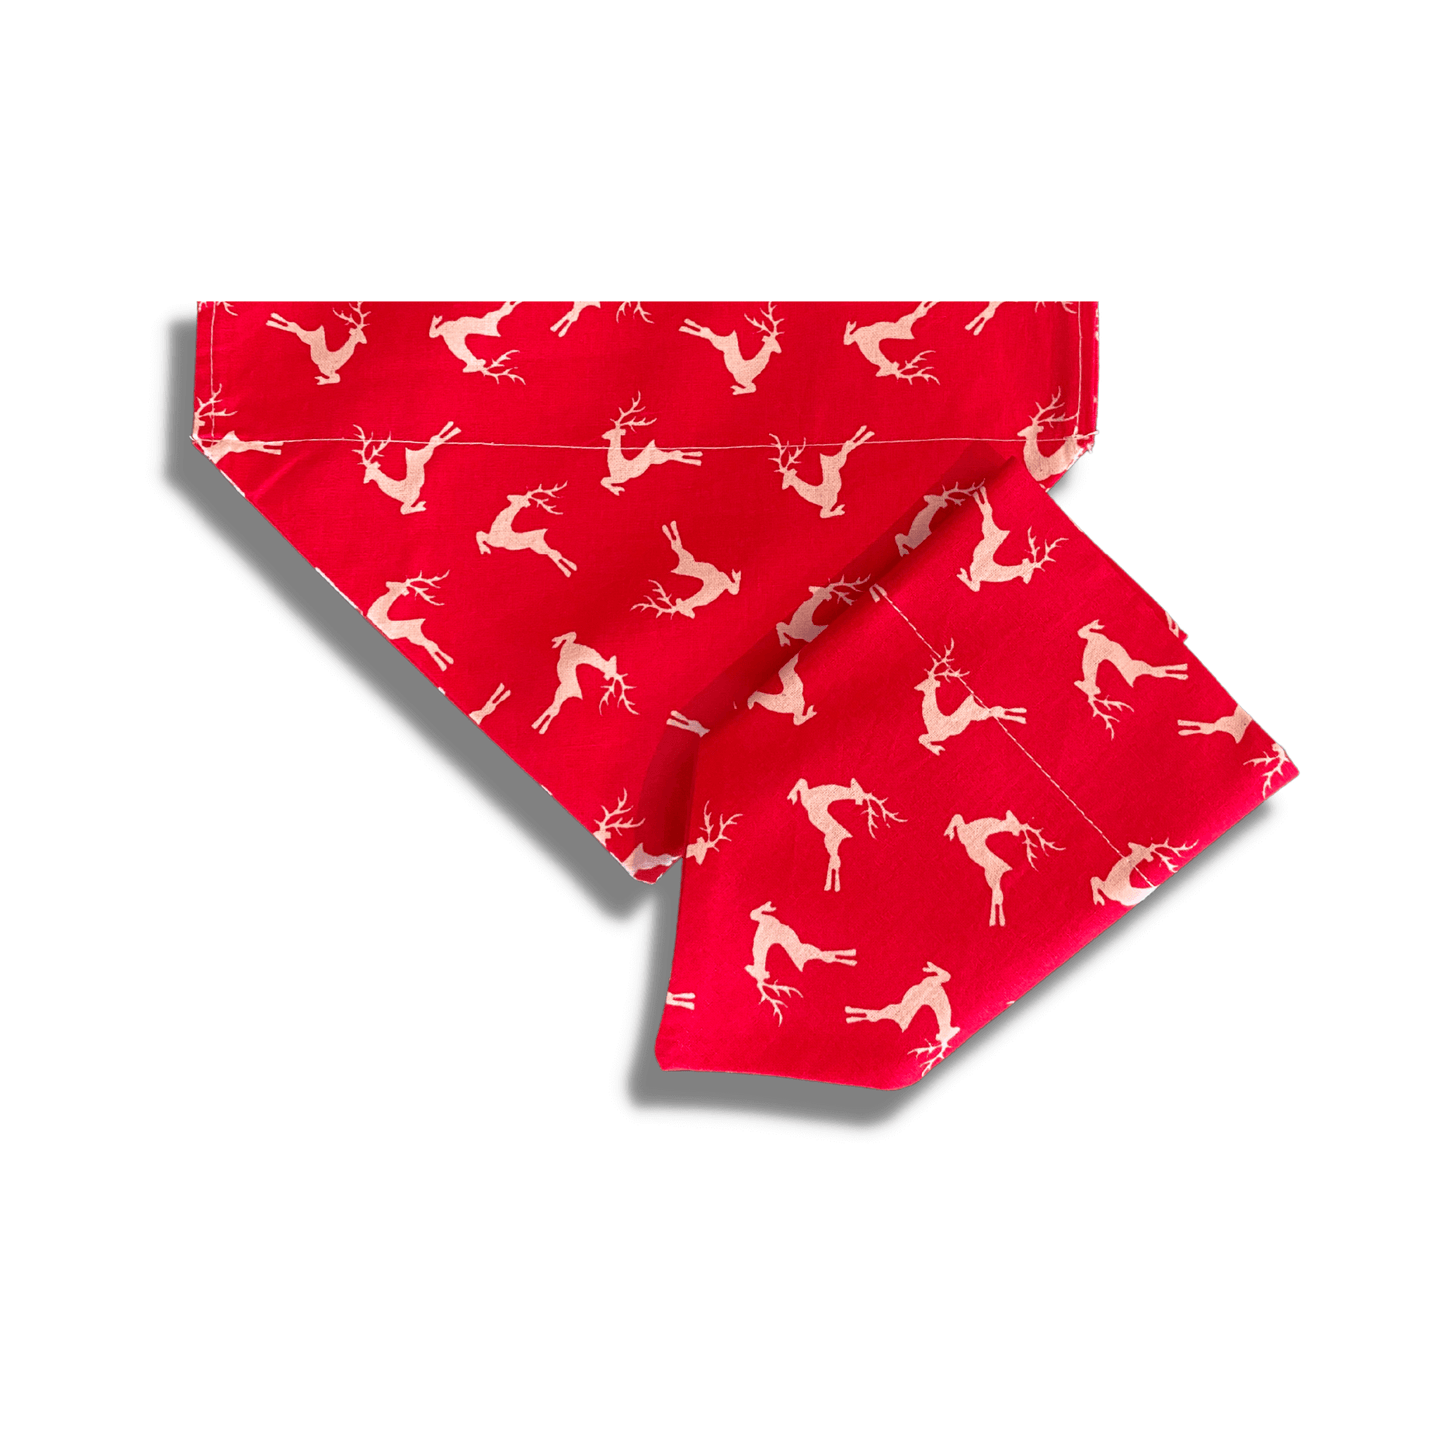 Christmas themed reversible dog bandana, let's pawty 